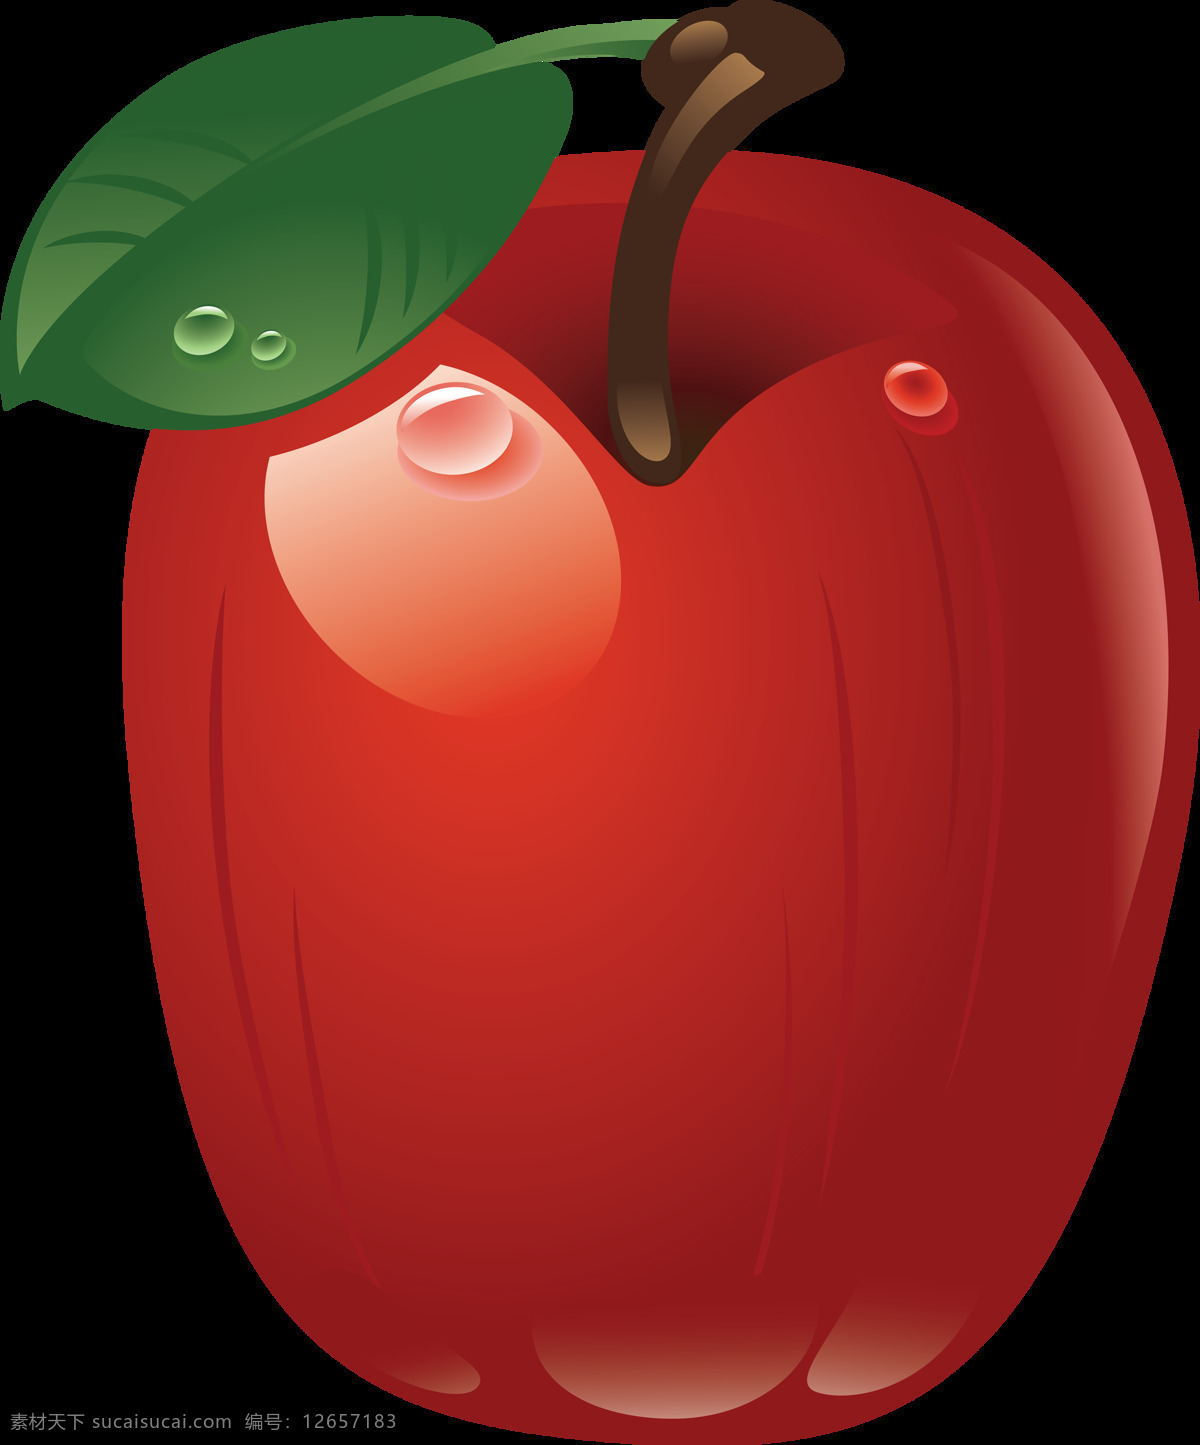 漂亮 闪亮 苹果 免 抠 透明 图 层 青苹果 苹果卡通图片 苹果logo 苹果简笔画 壁纸高清 大苹果 红苹果 苹果梨树 苹果商标 金毛苹果 青苹果榨汁